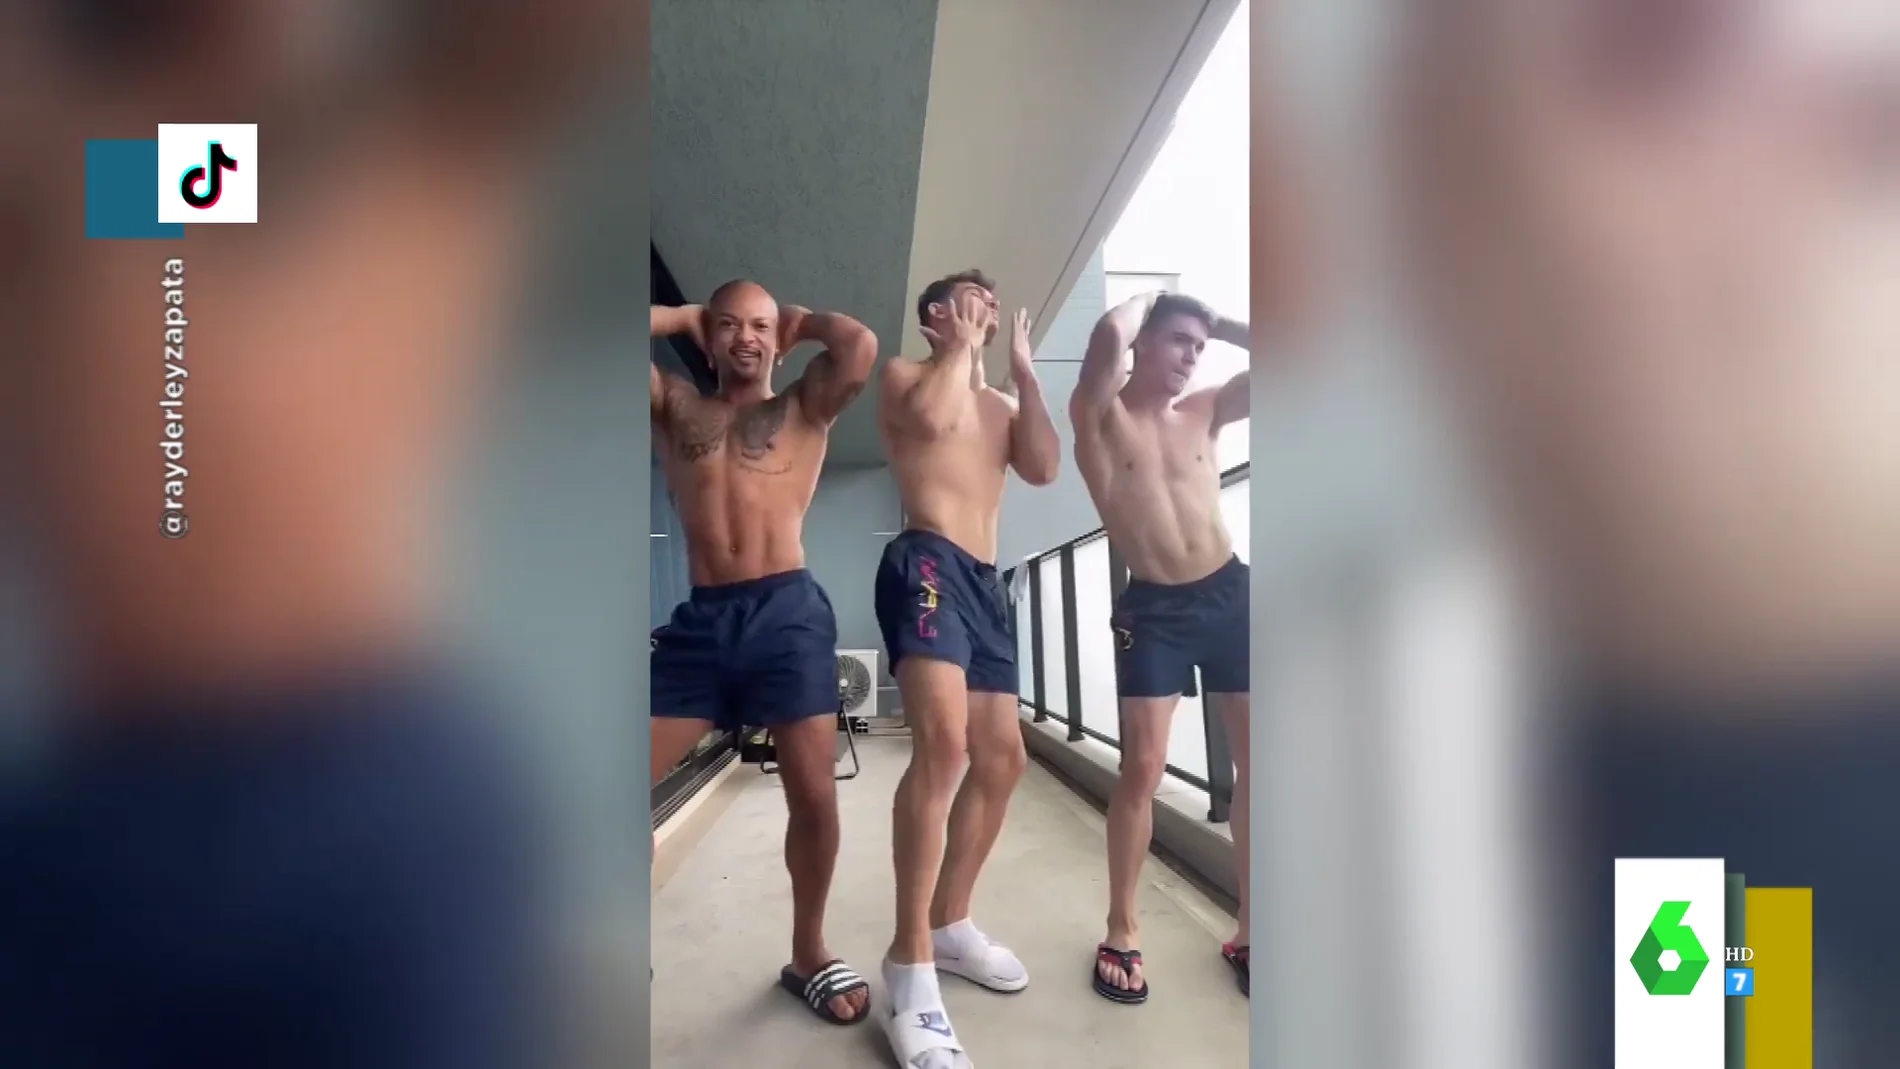 El baile viral de los gimnastas españoles Ray Zapata, Nicolau Mir y Joel Plata al ritmo de 'Asereje' en Tik Tok